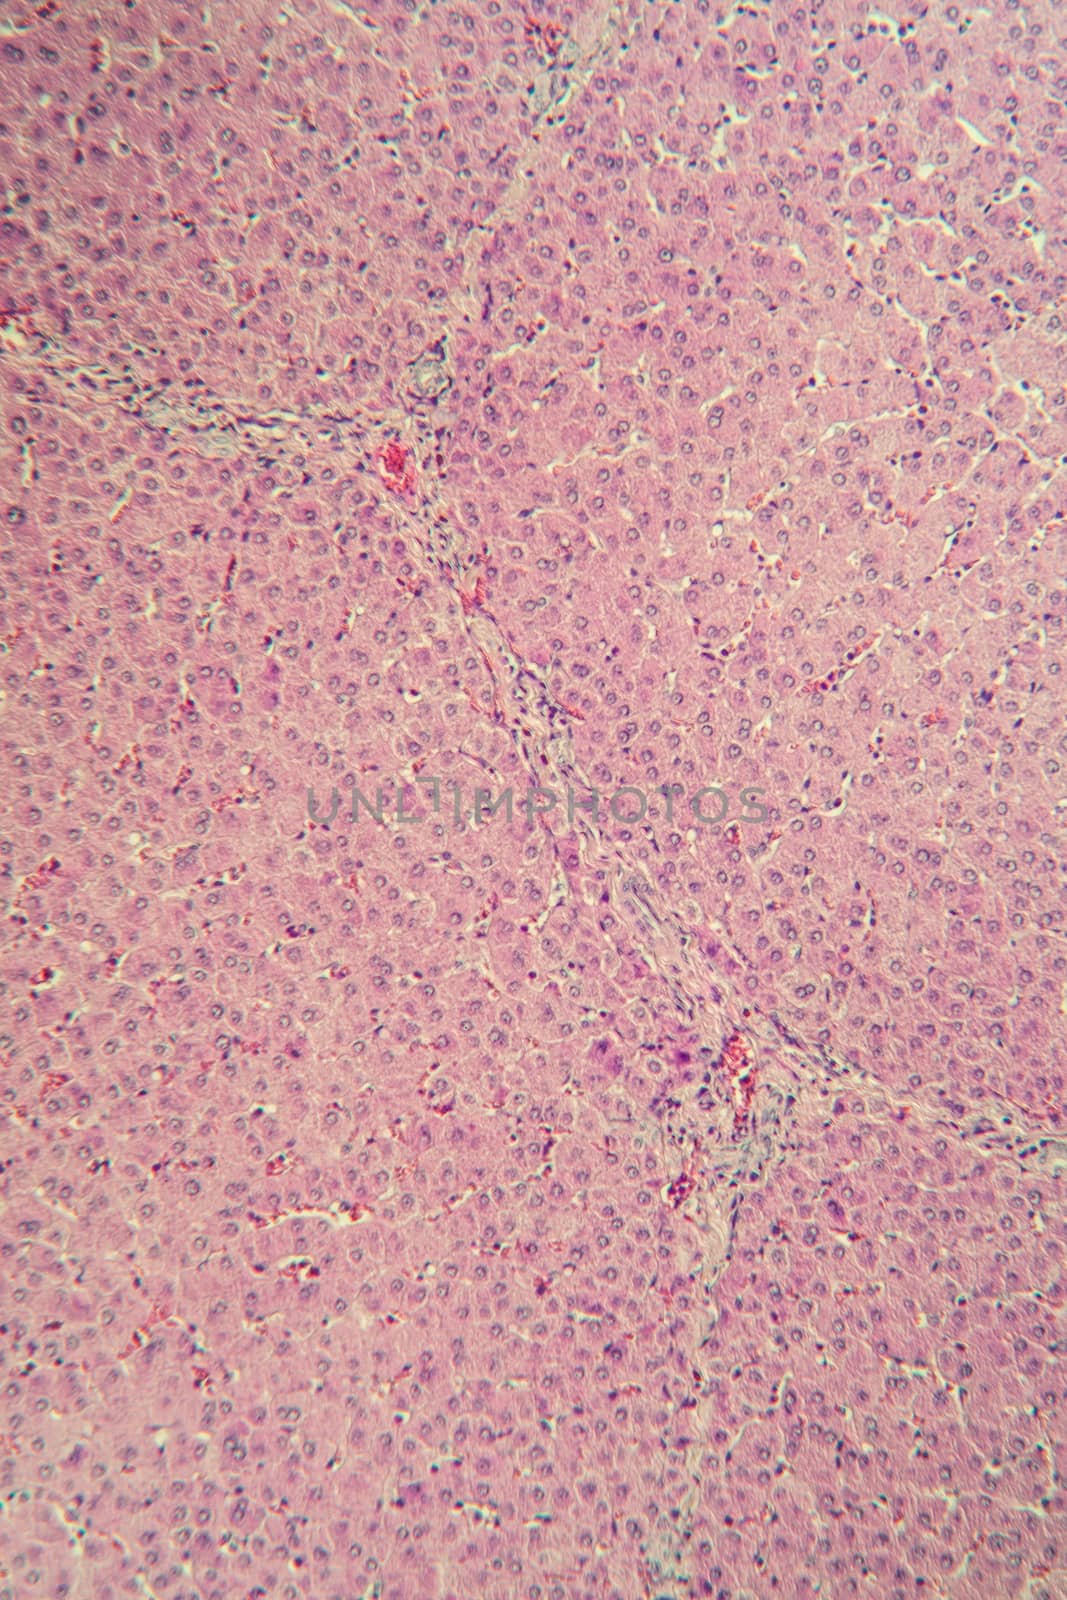 Pork liver tissue cut 100x by Dr-Lange